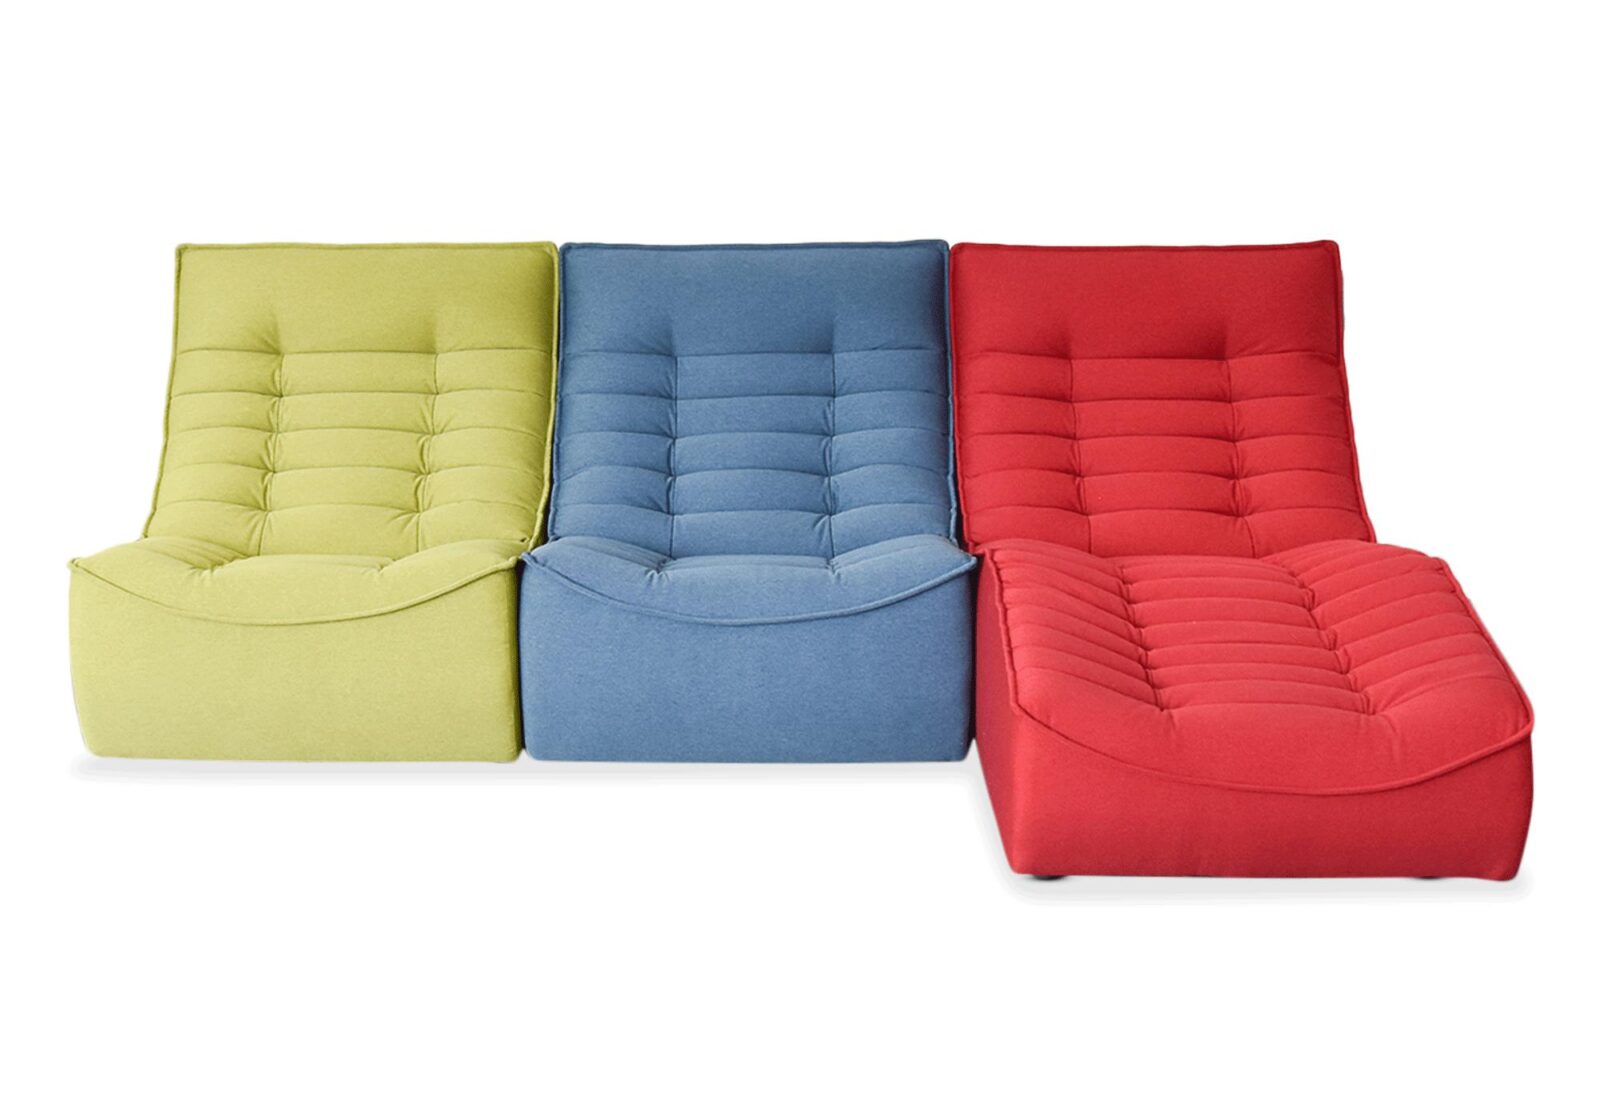 Liege mit Sesselgruppe. Bezug: Stoff. Farbe: grün  blau und rot. Erhältlich bei Möbel Gallati.